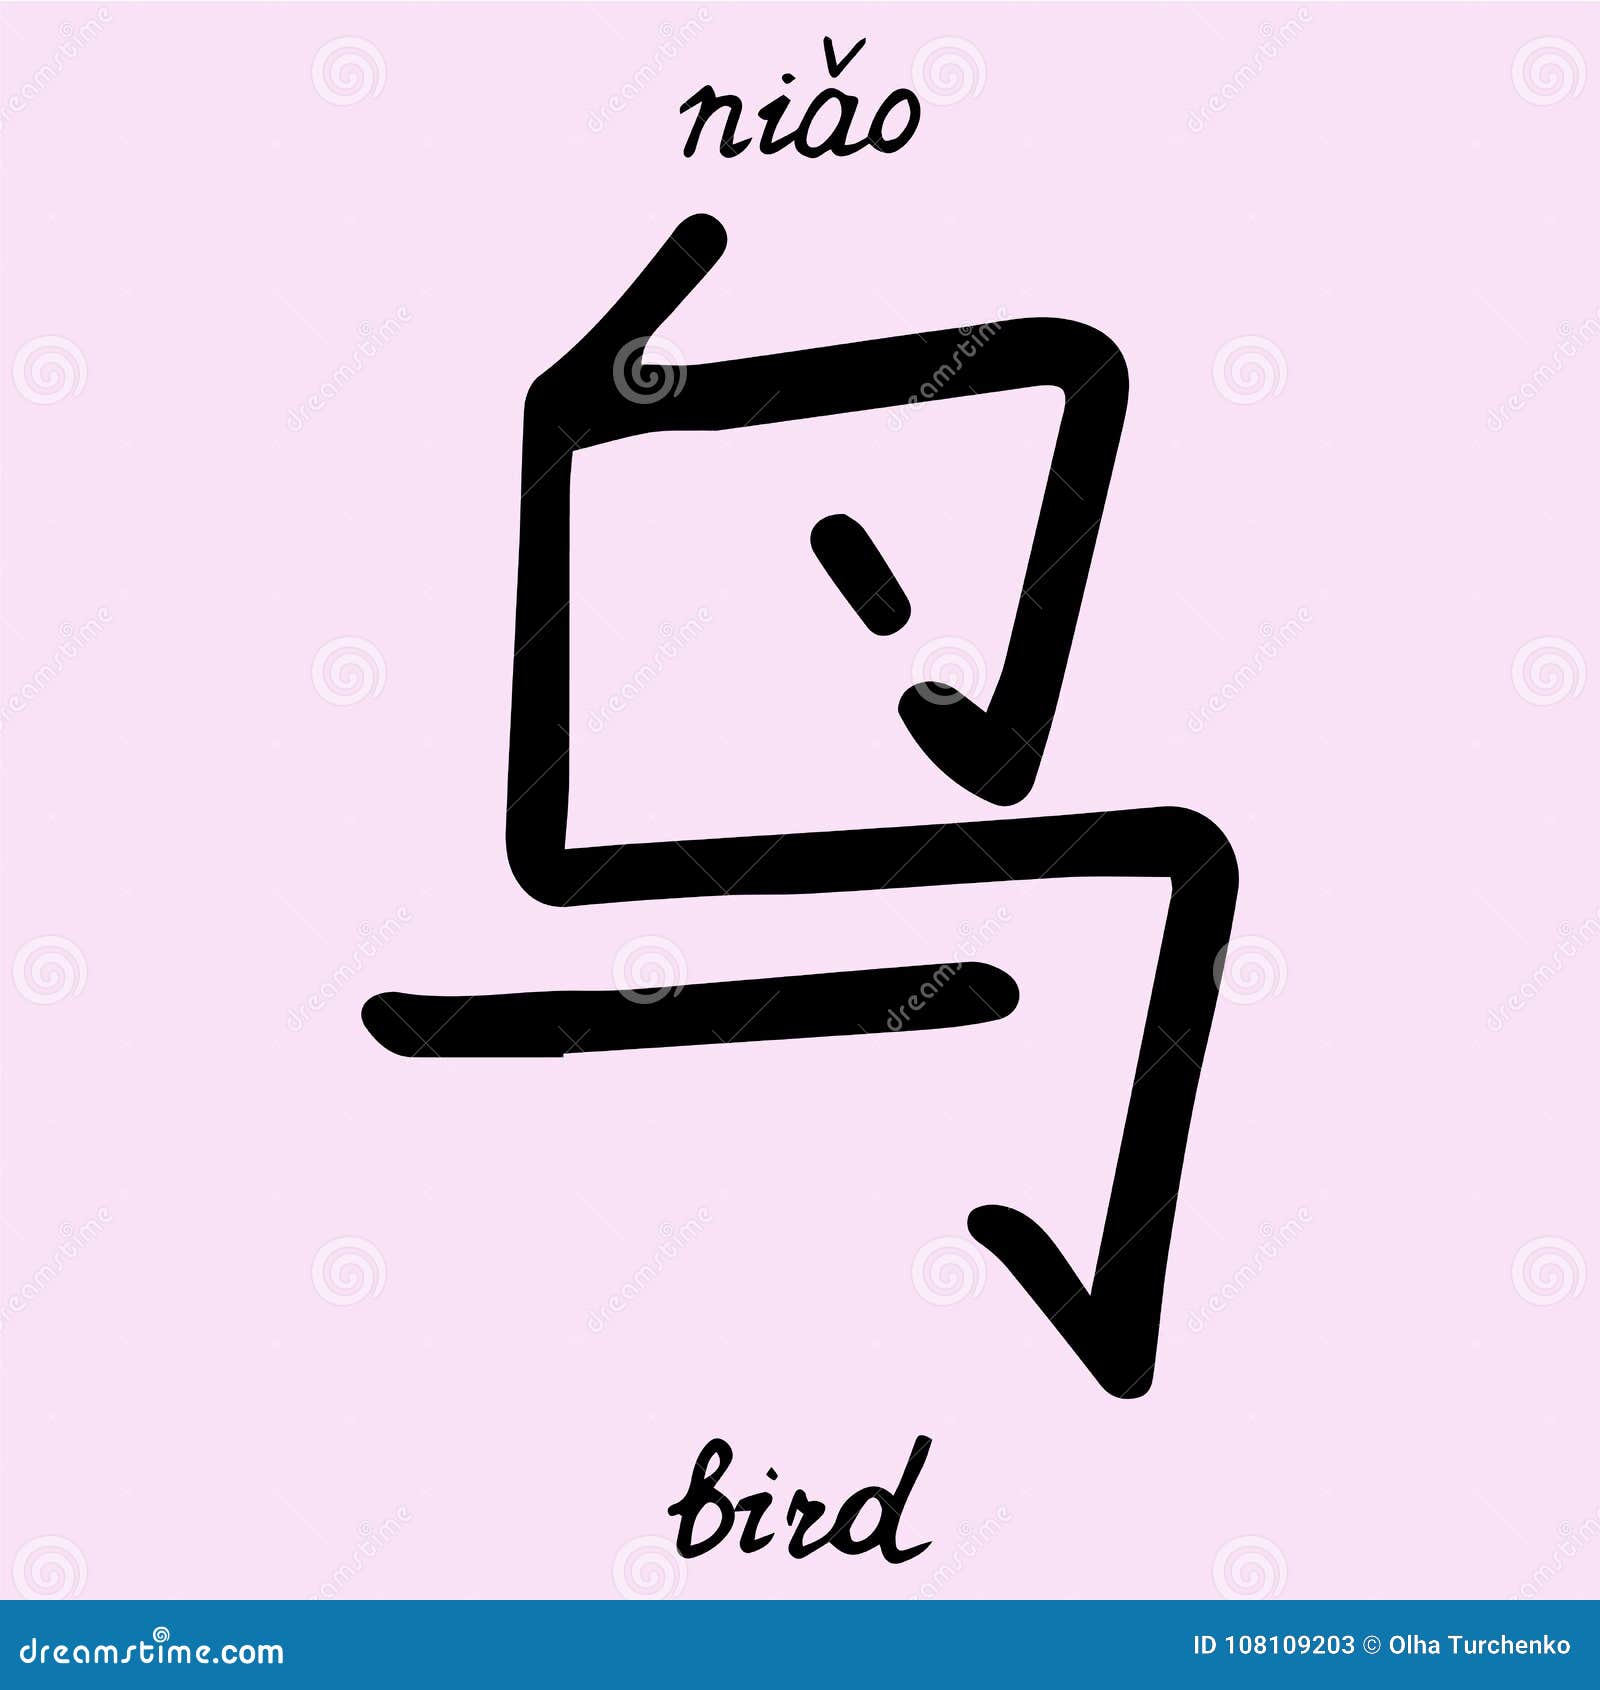 Как переводится птичка на китайском